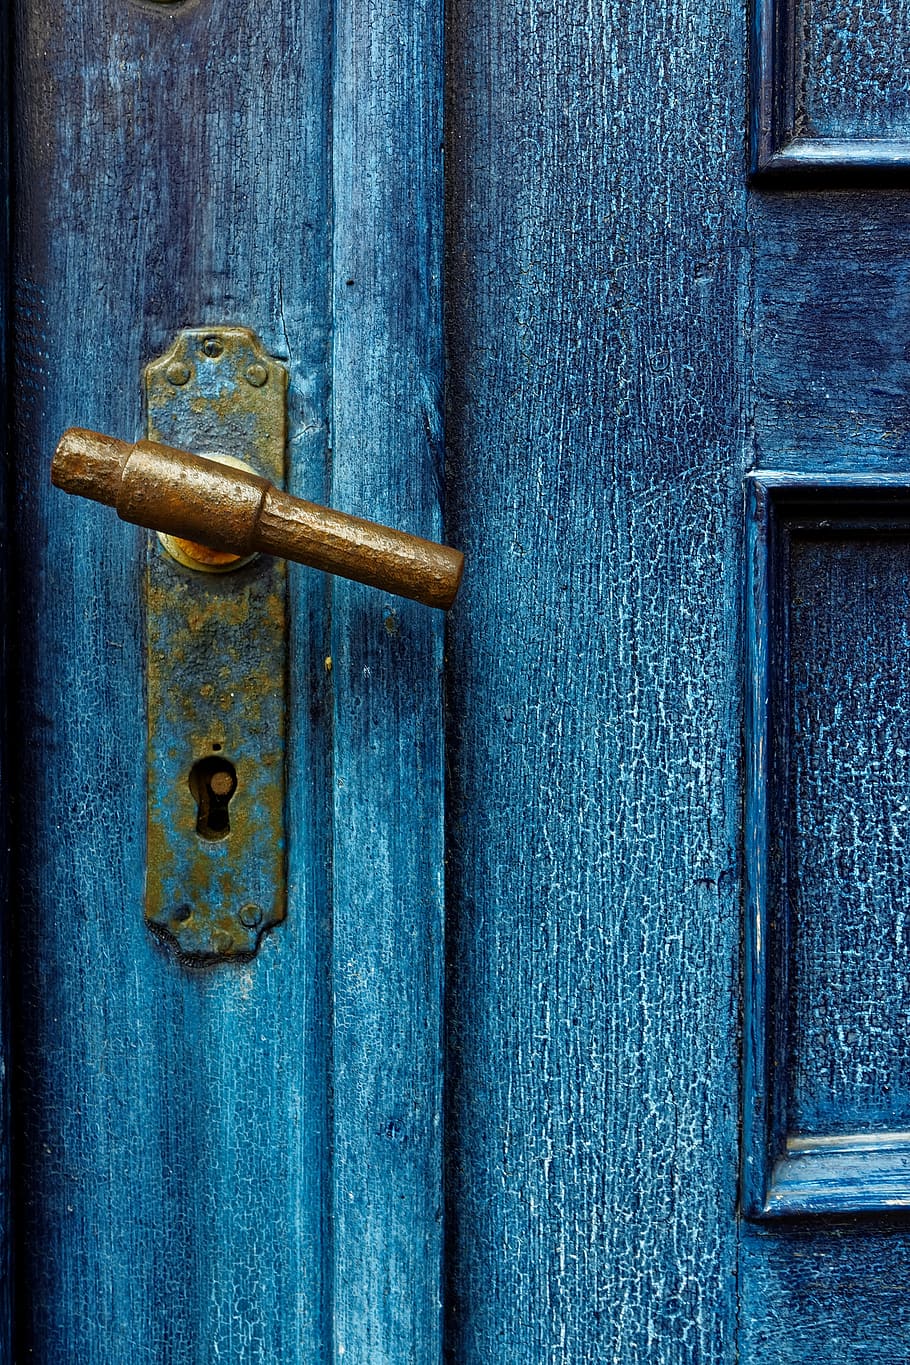 antique, door, old, wood, architecture, rusty, door handle, metal, antiquity, texture